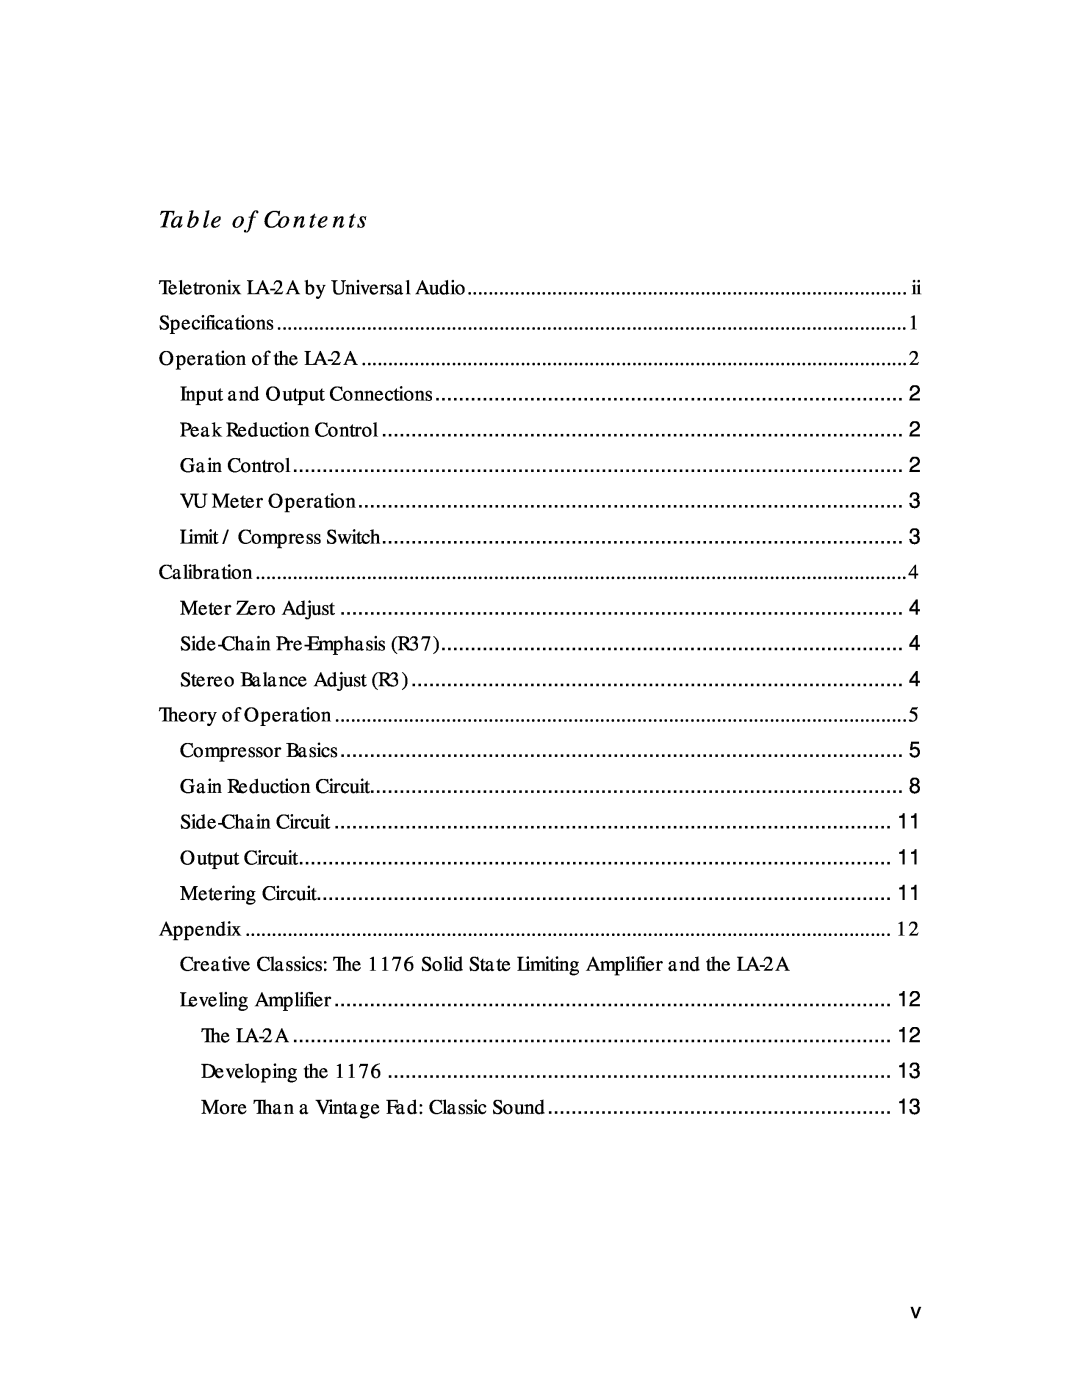 Inova LA-2A manual Table of Contents, Appendix 